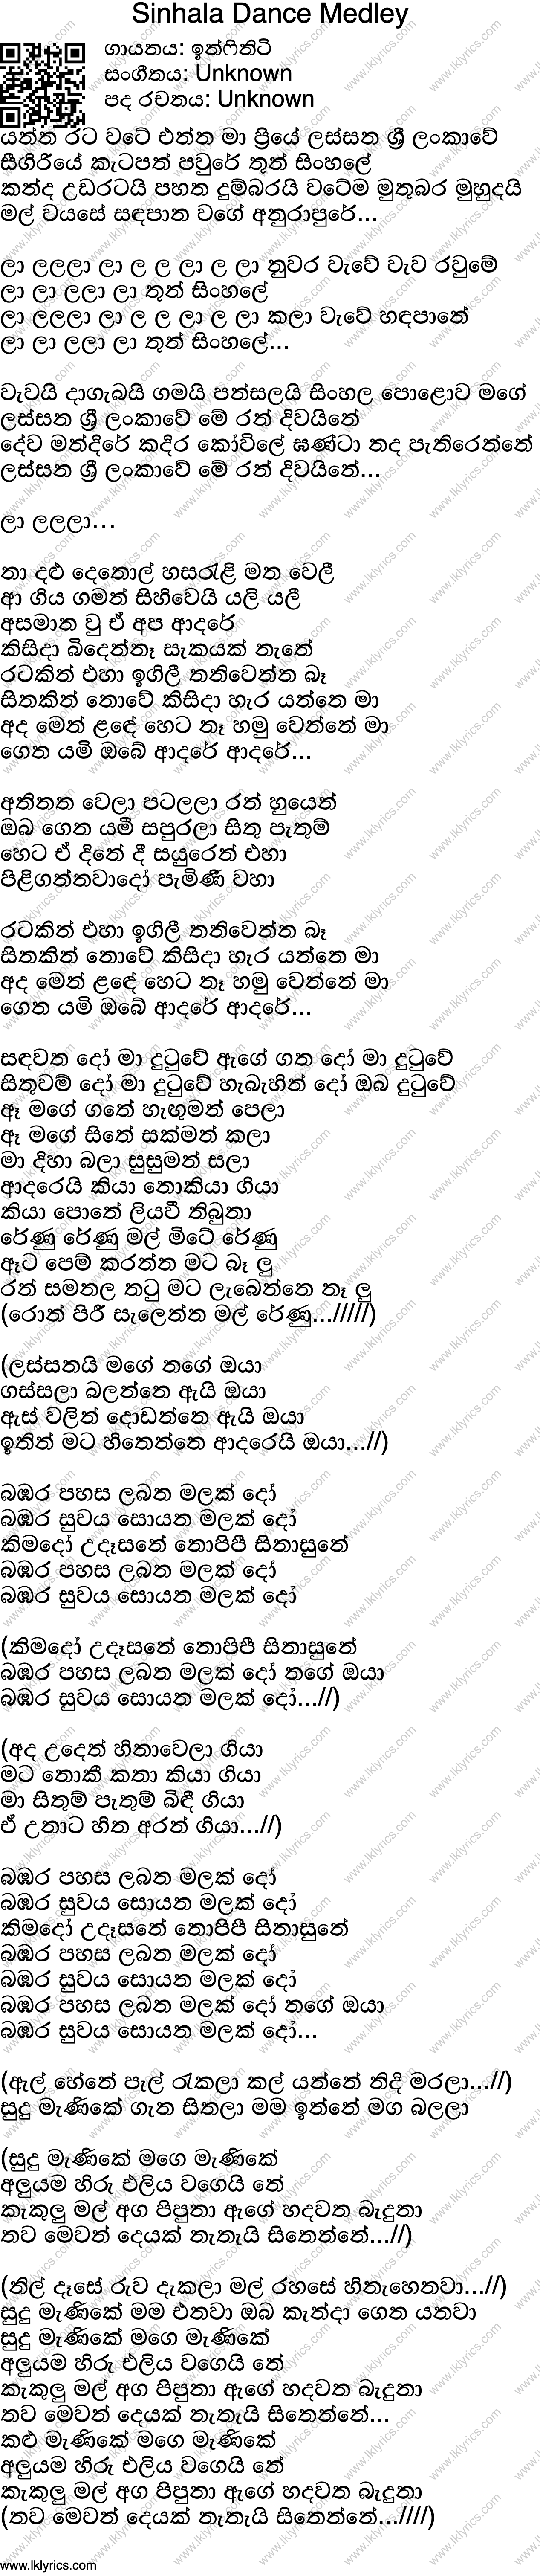 Sinhala Songs Lyrics In Sinhala